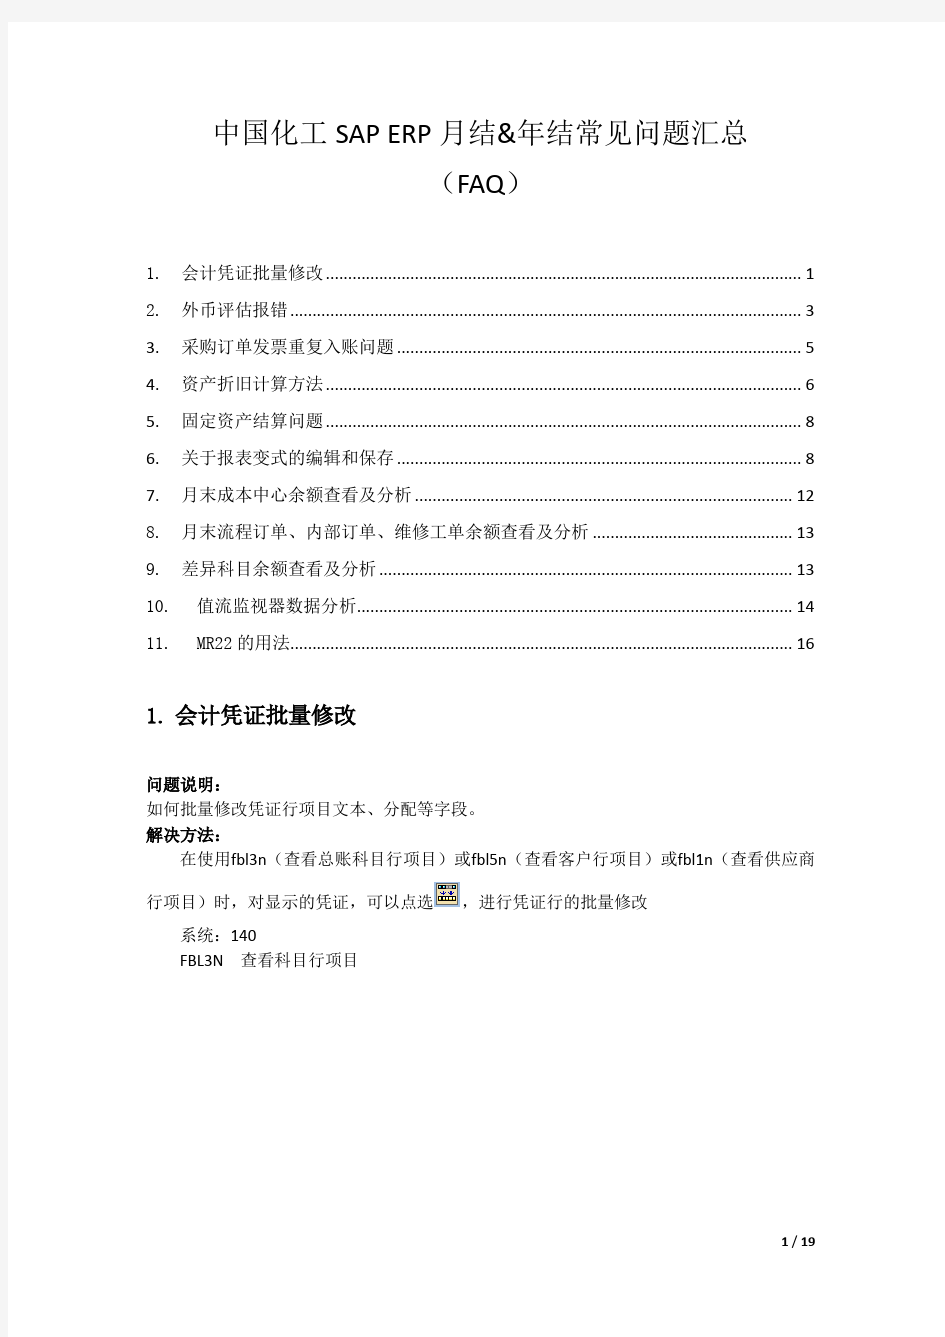 中国化工SAP ERP 月结&年结常见问题汇总SAPERPFAQ_v2.1